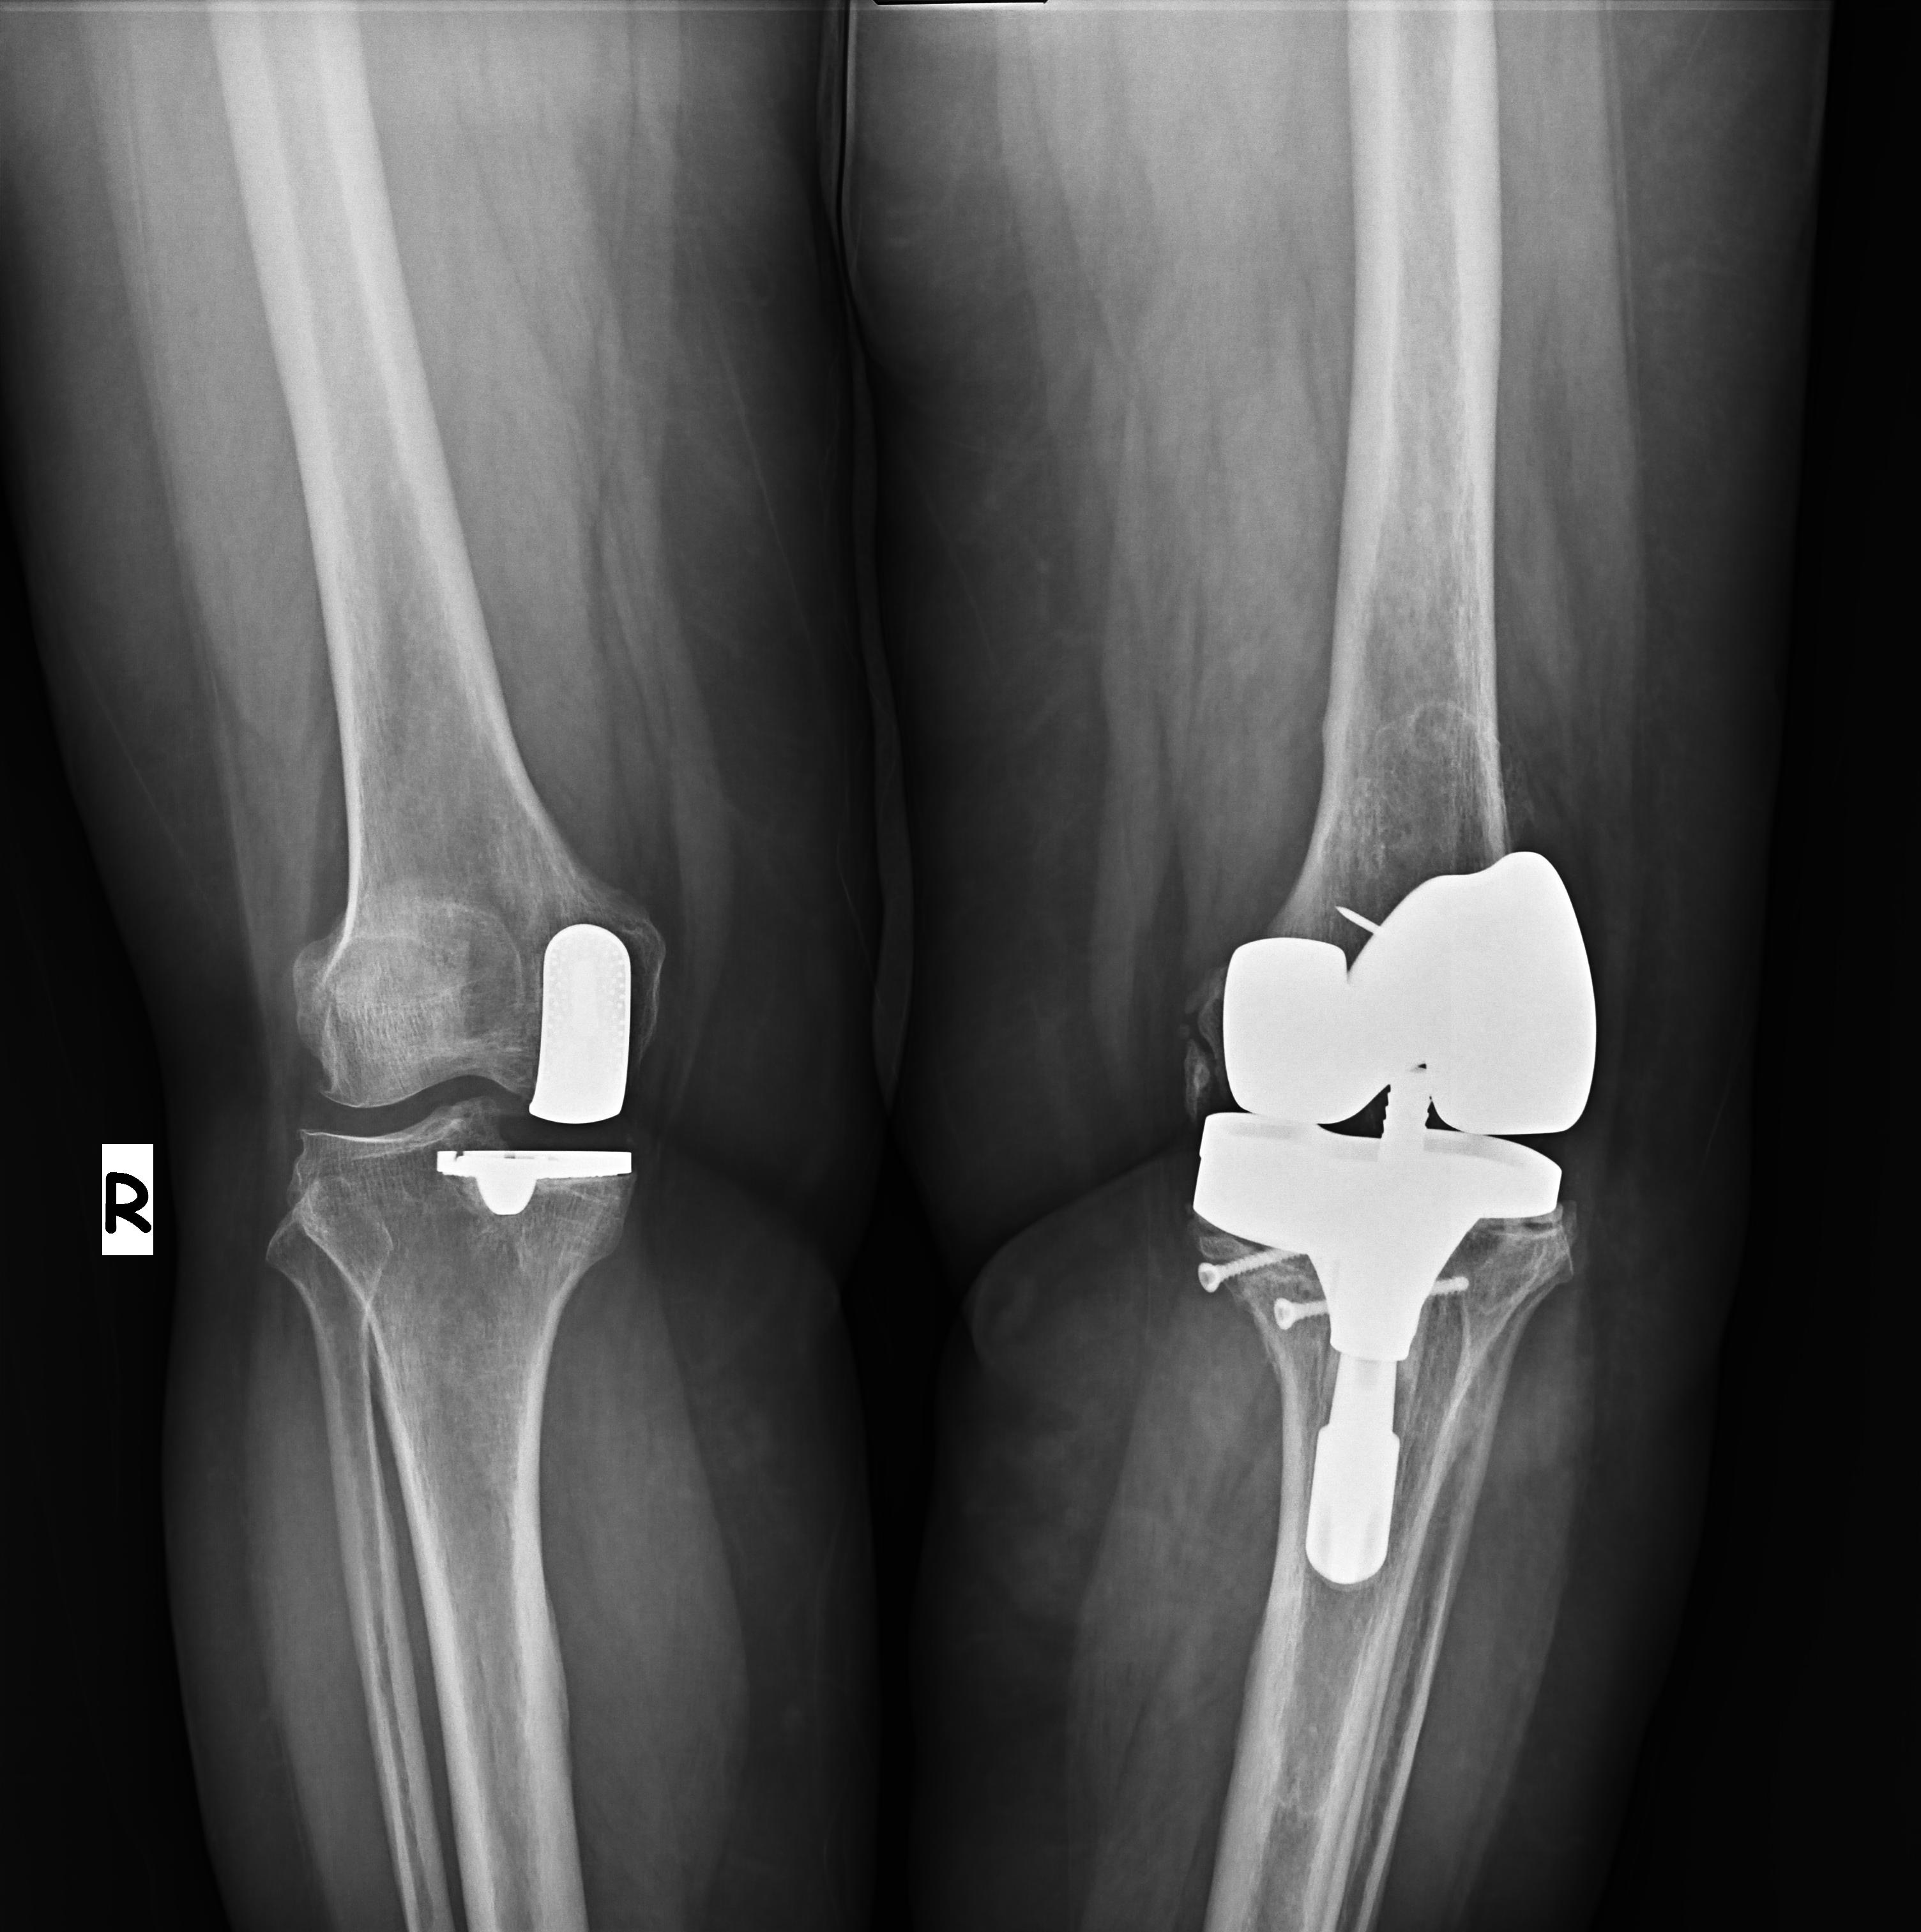 ameliyat öncesi (sol diz 3. protez, sağ ilk kısmi protez)